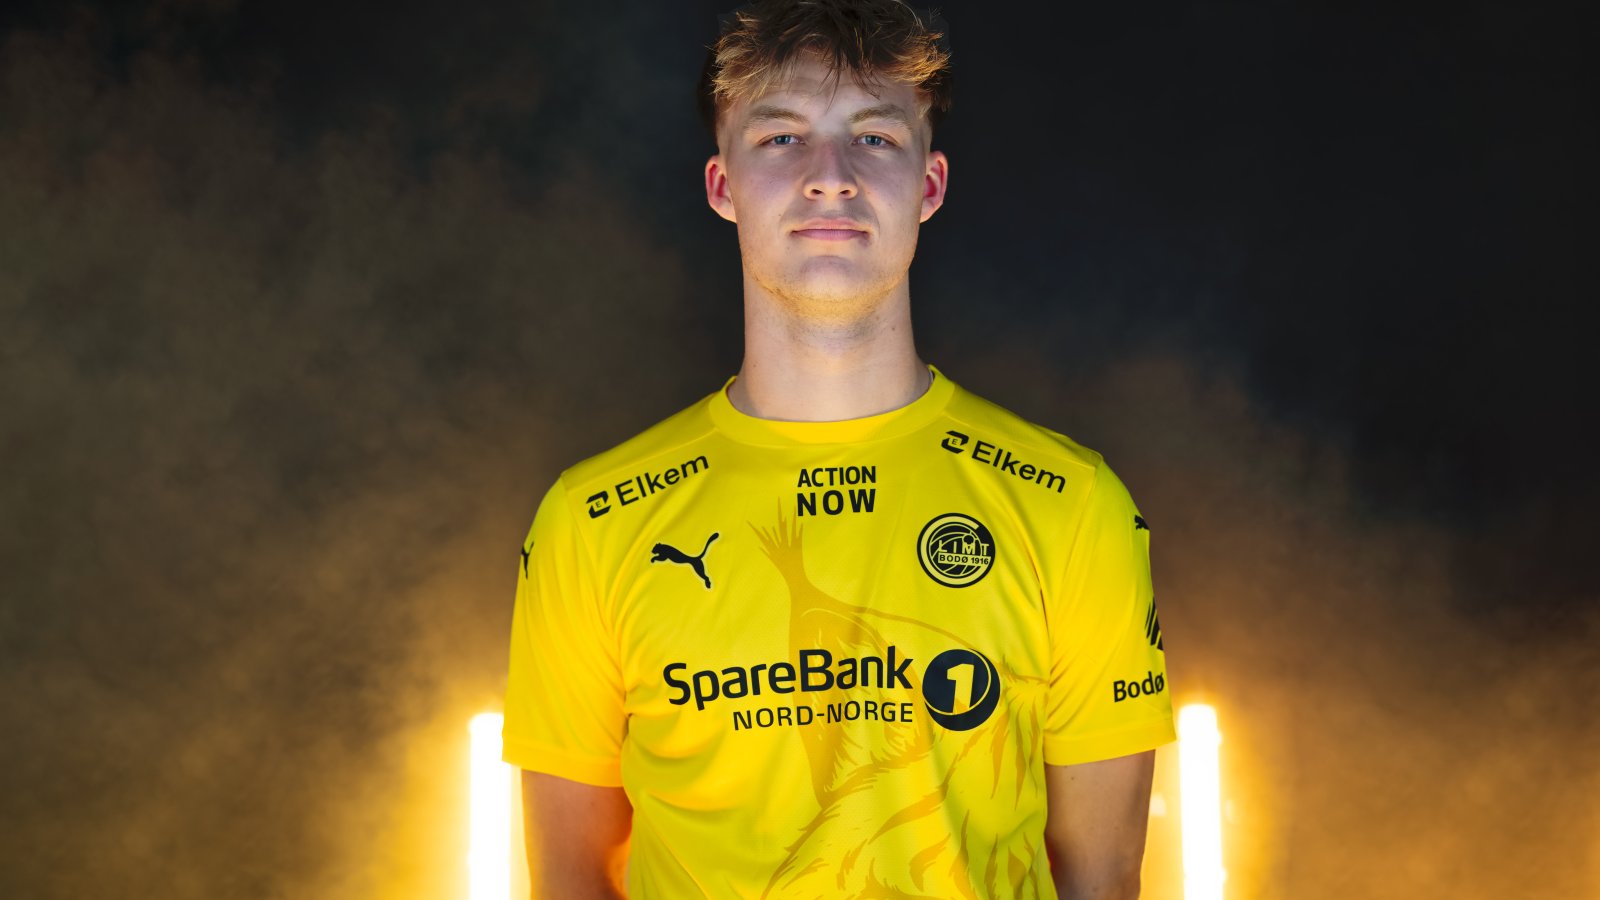 Villads Nielsen poserer i Glimt-drakt etter at han signerte for Bodø/Glimt. I bakgrunnen ser vi gule lys og røyk. 